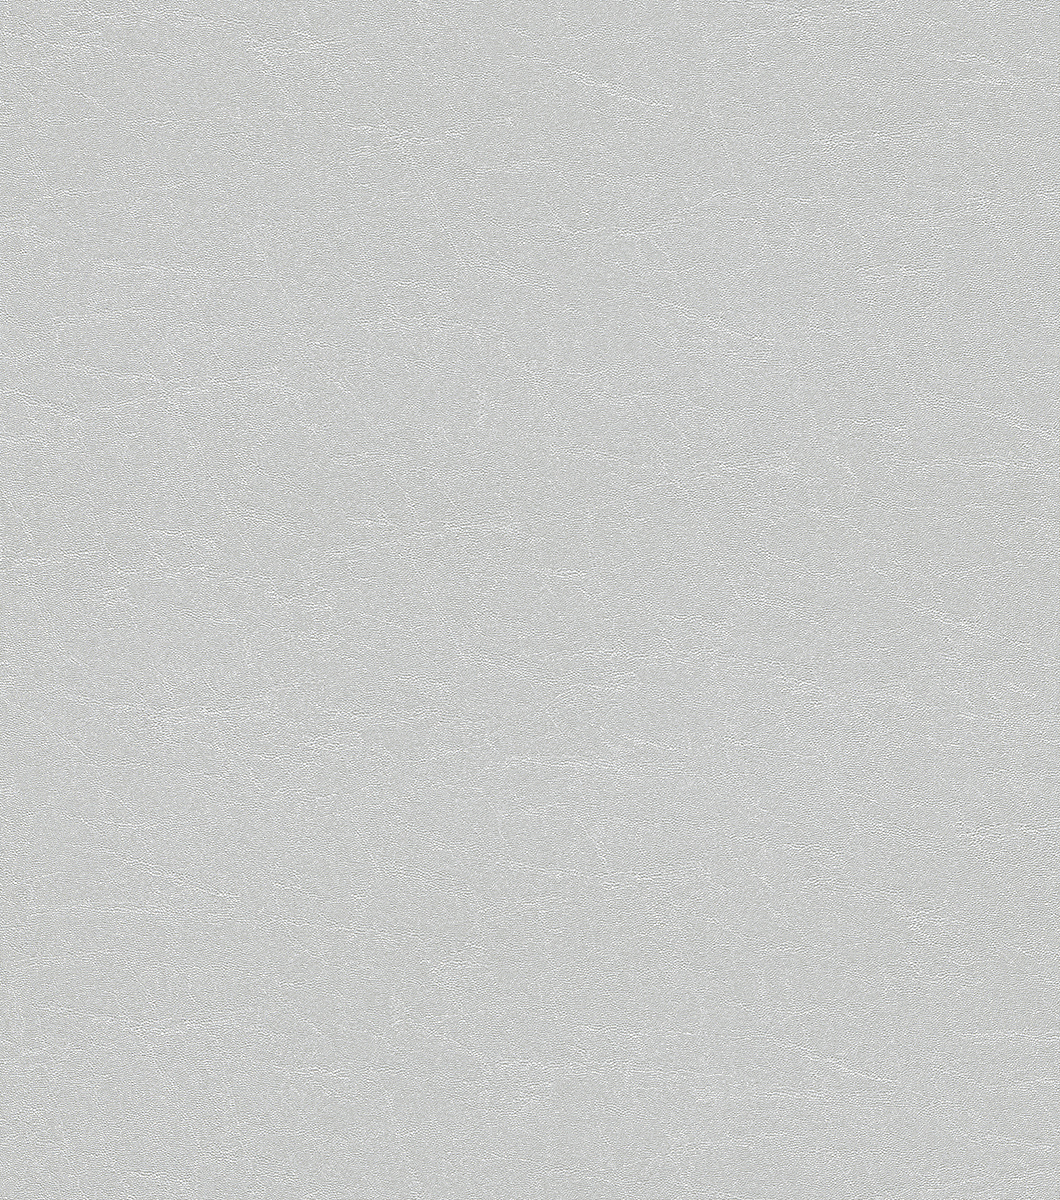 Ezüstszürke színű bőrhatású uni tapéta